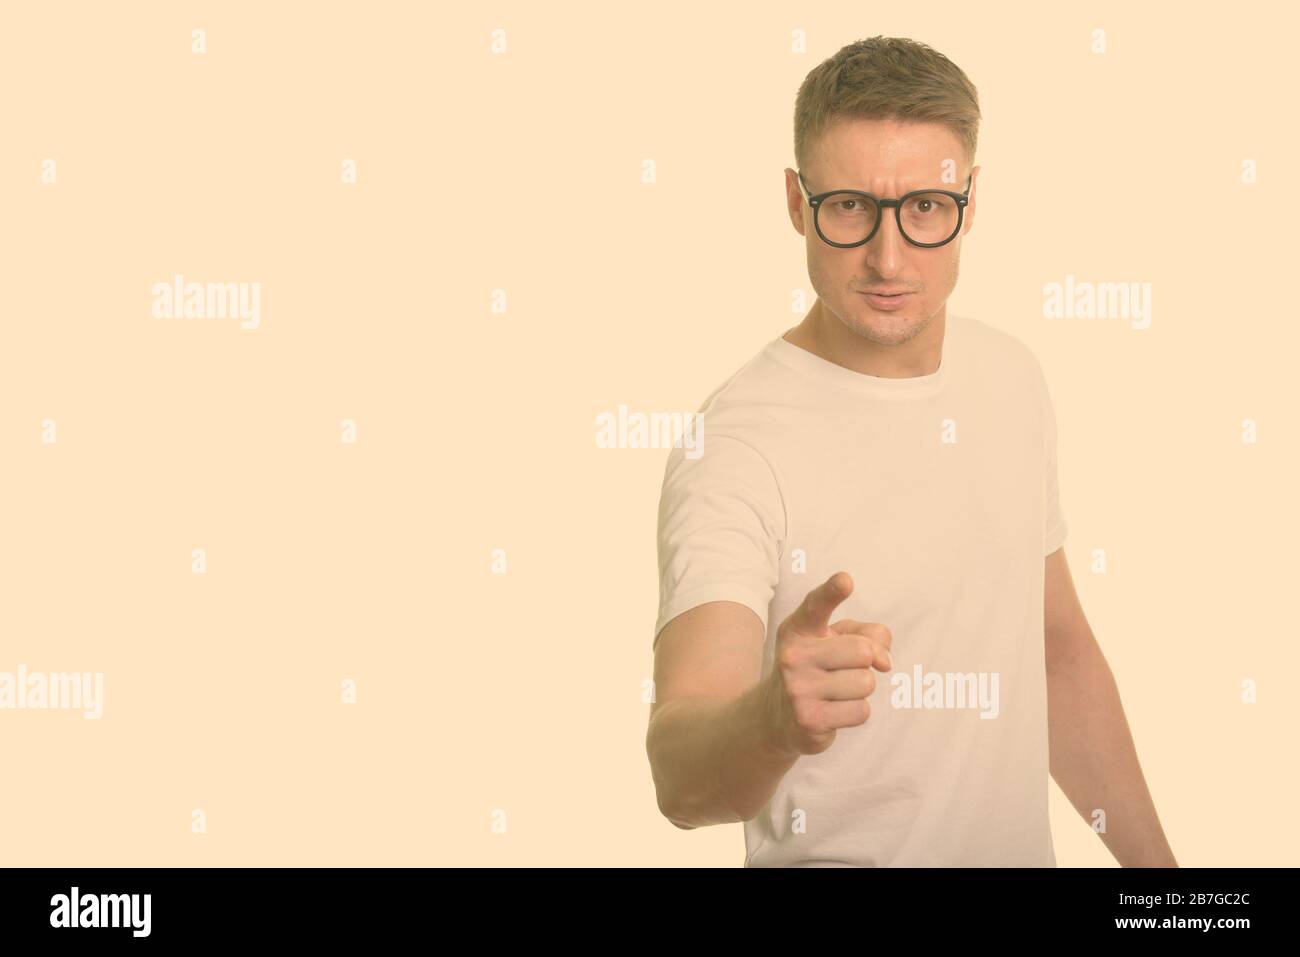 Retrato de un hombre nerd estresado con gafas apuntando a la cámara Foto de stock